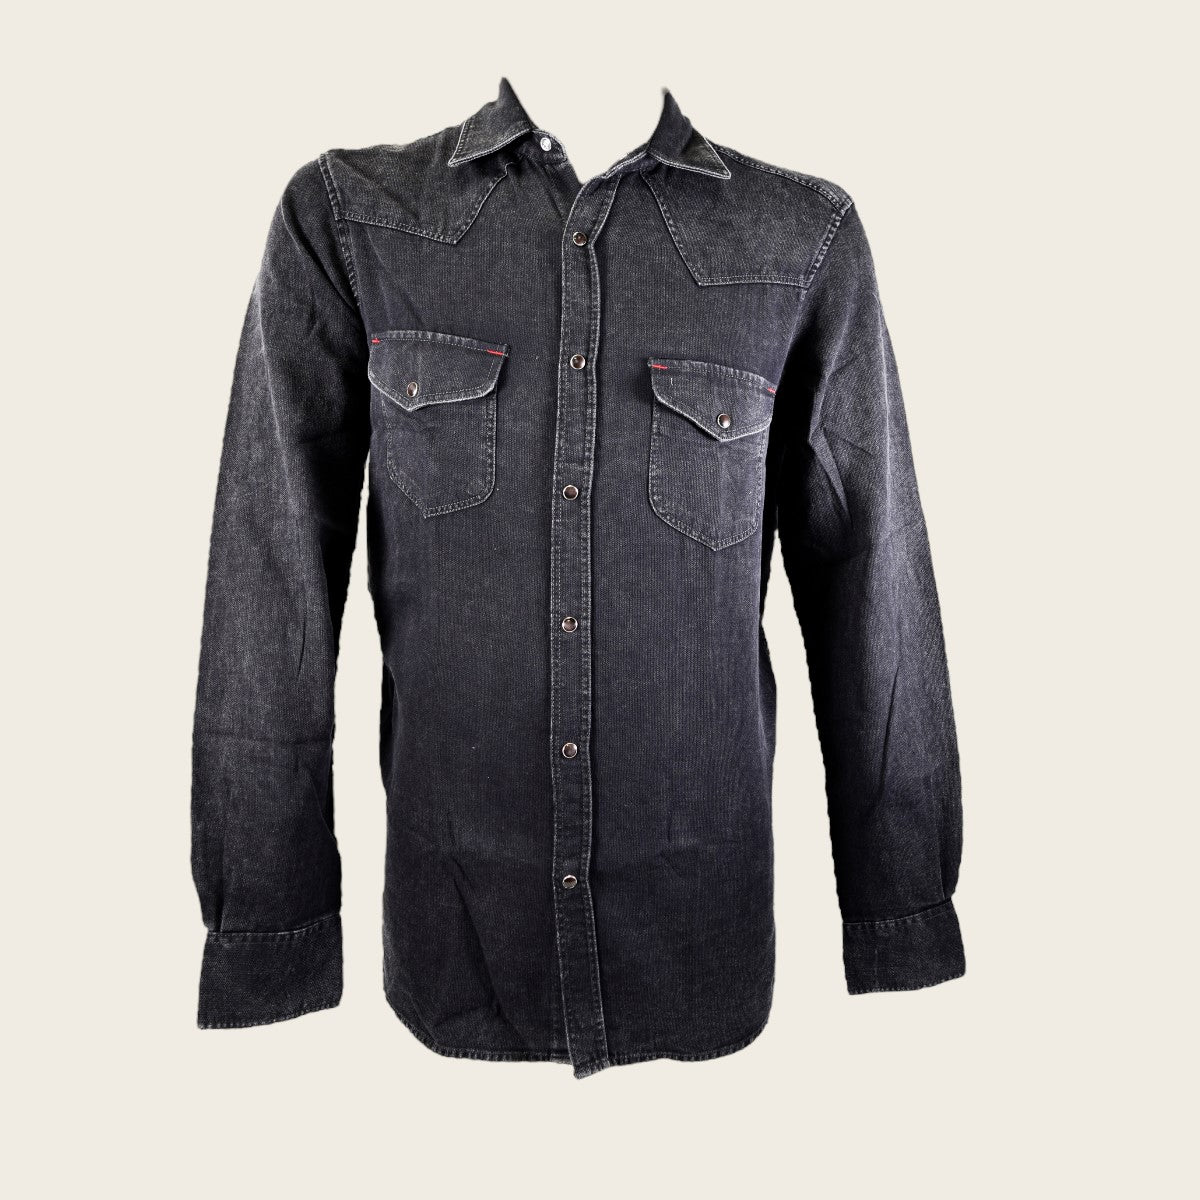 ESPRIT - Denim shirt, 100% cotton at our online shop